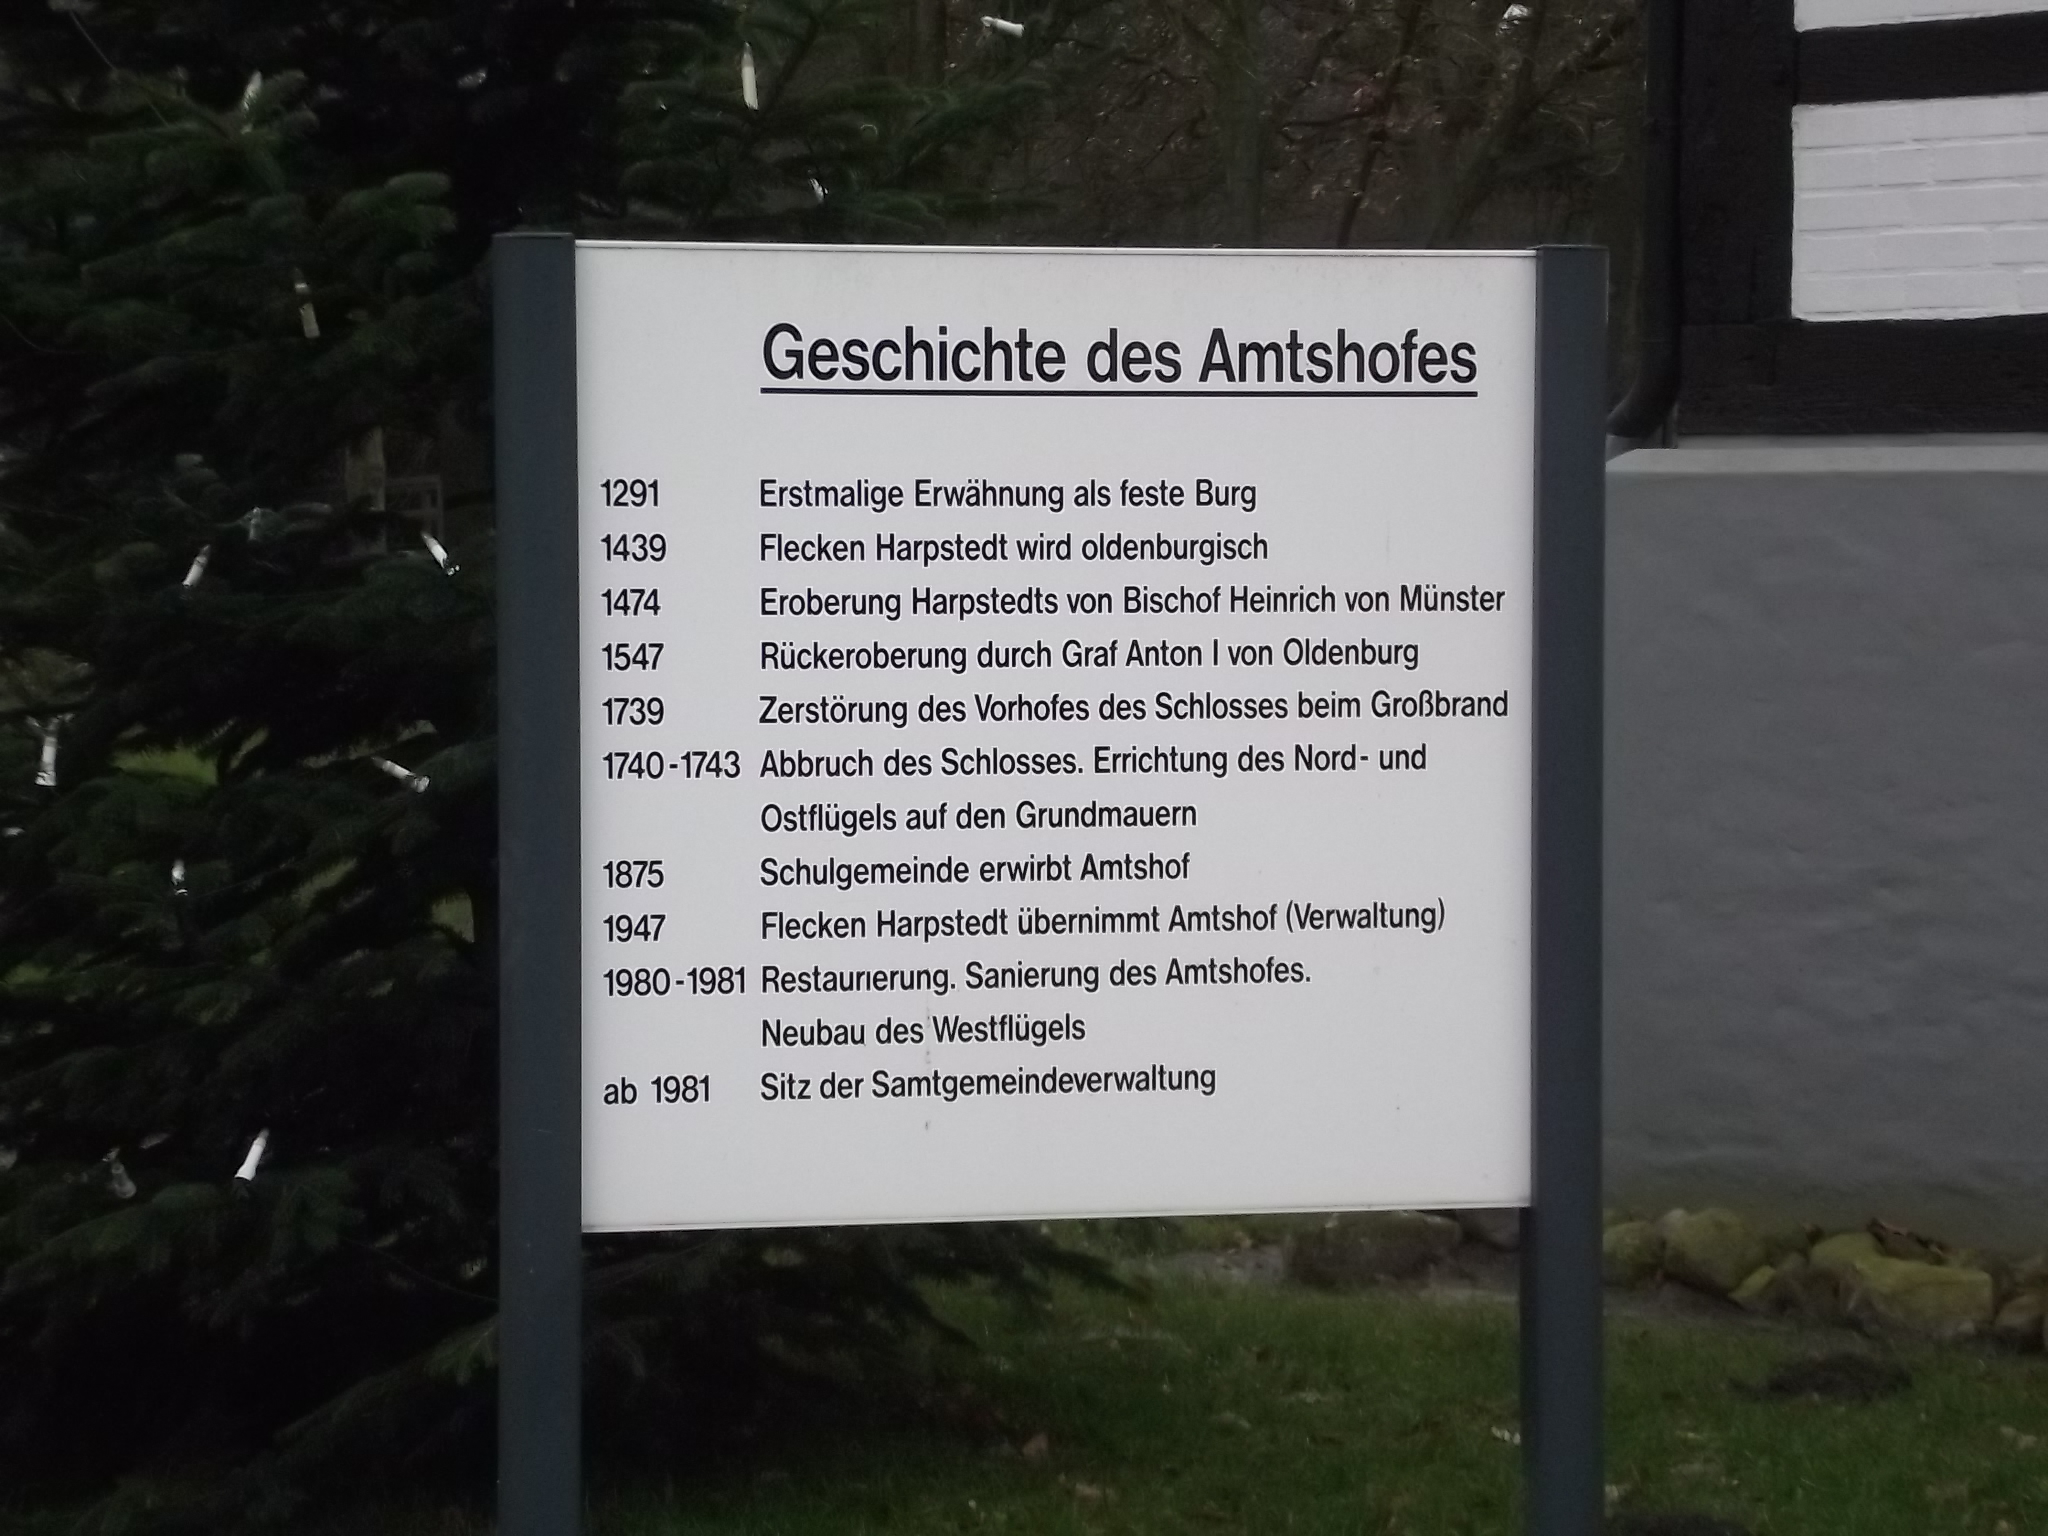 Der Amtshof in Harpstedt - Standesamt und Gemeindeverwaltung
Tafel zur Geschichte